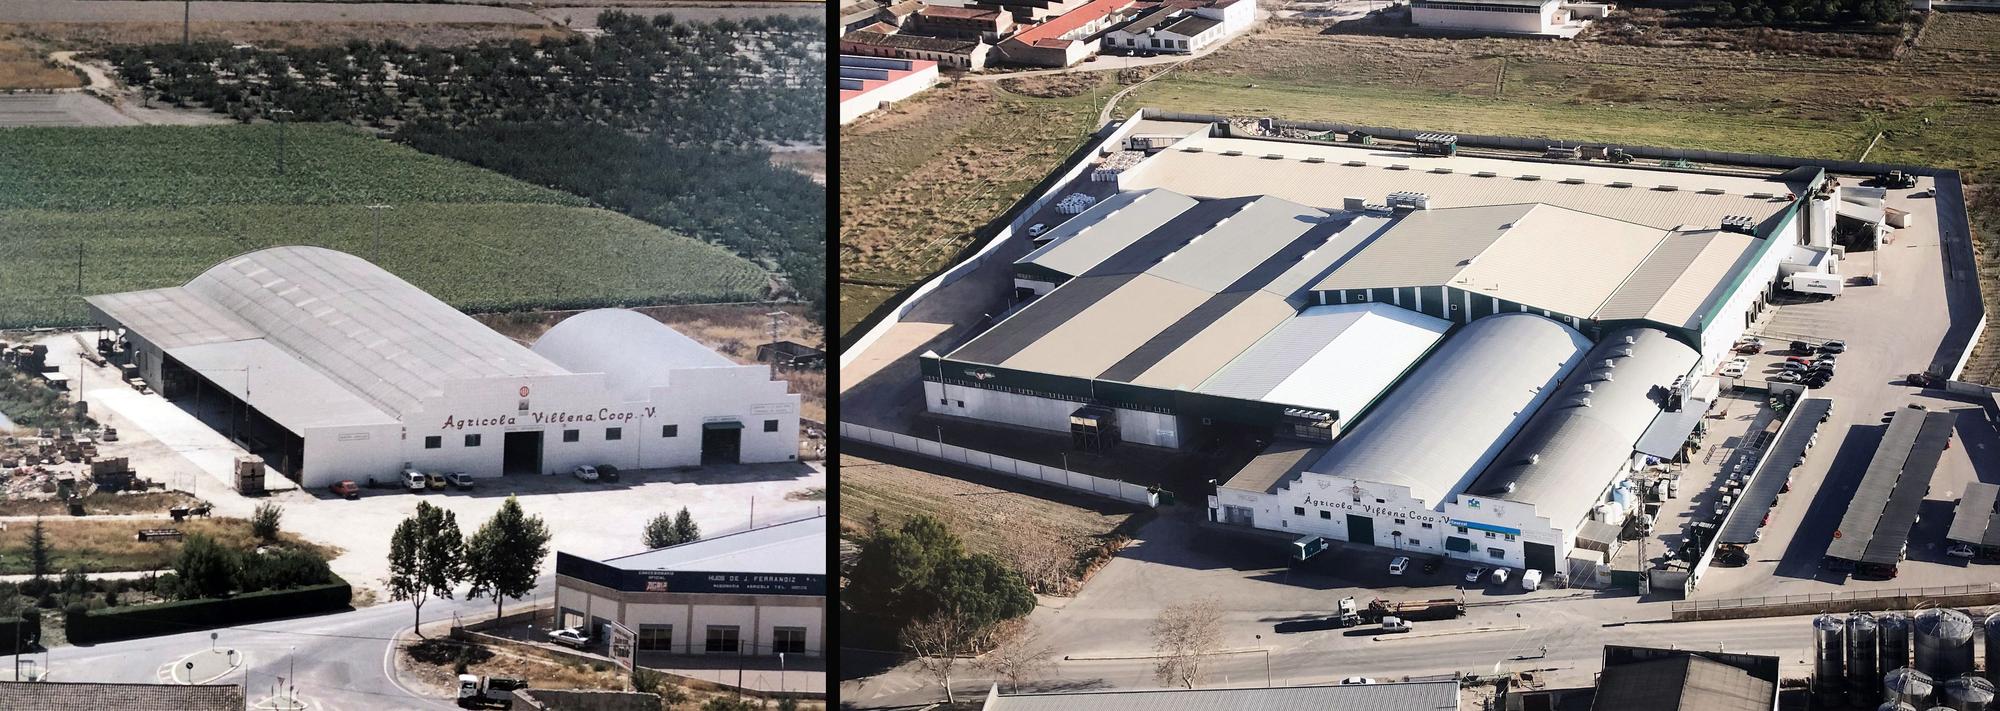 En el año 1975 la nave de Agrícola Villena contaba con 1.900 m2. Hoy en día, la empresa tiene unas instalaciones de más de 20.000 m2 en una parcela de 38.000 m2.